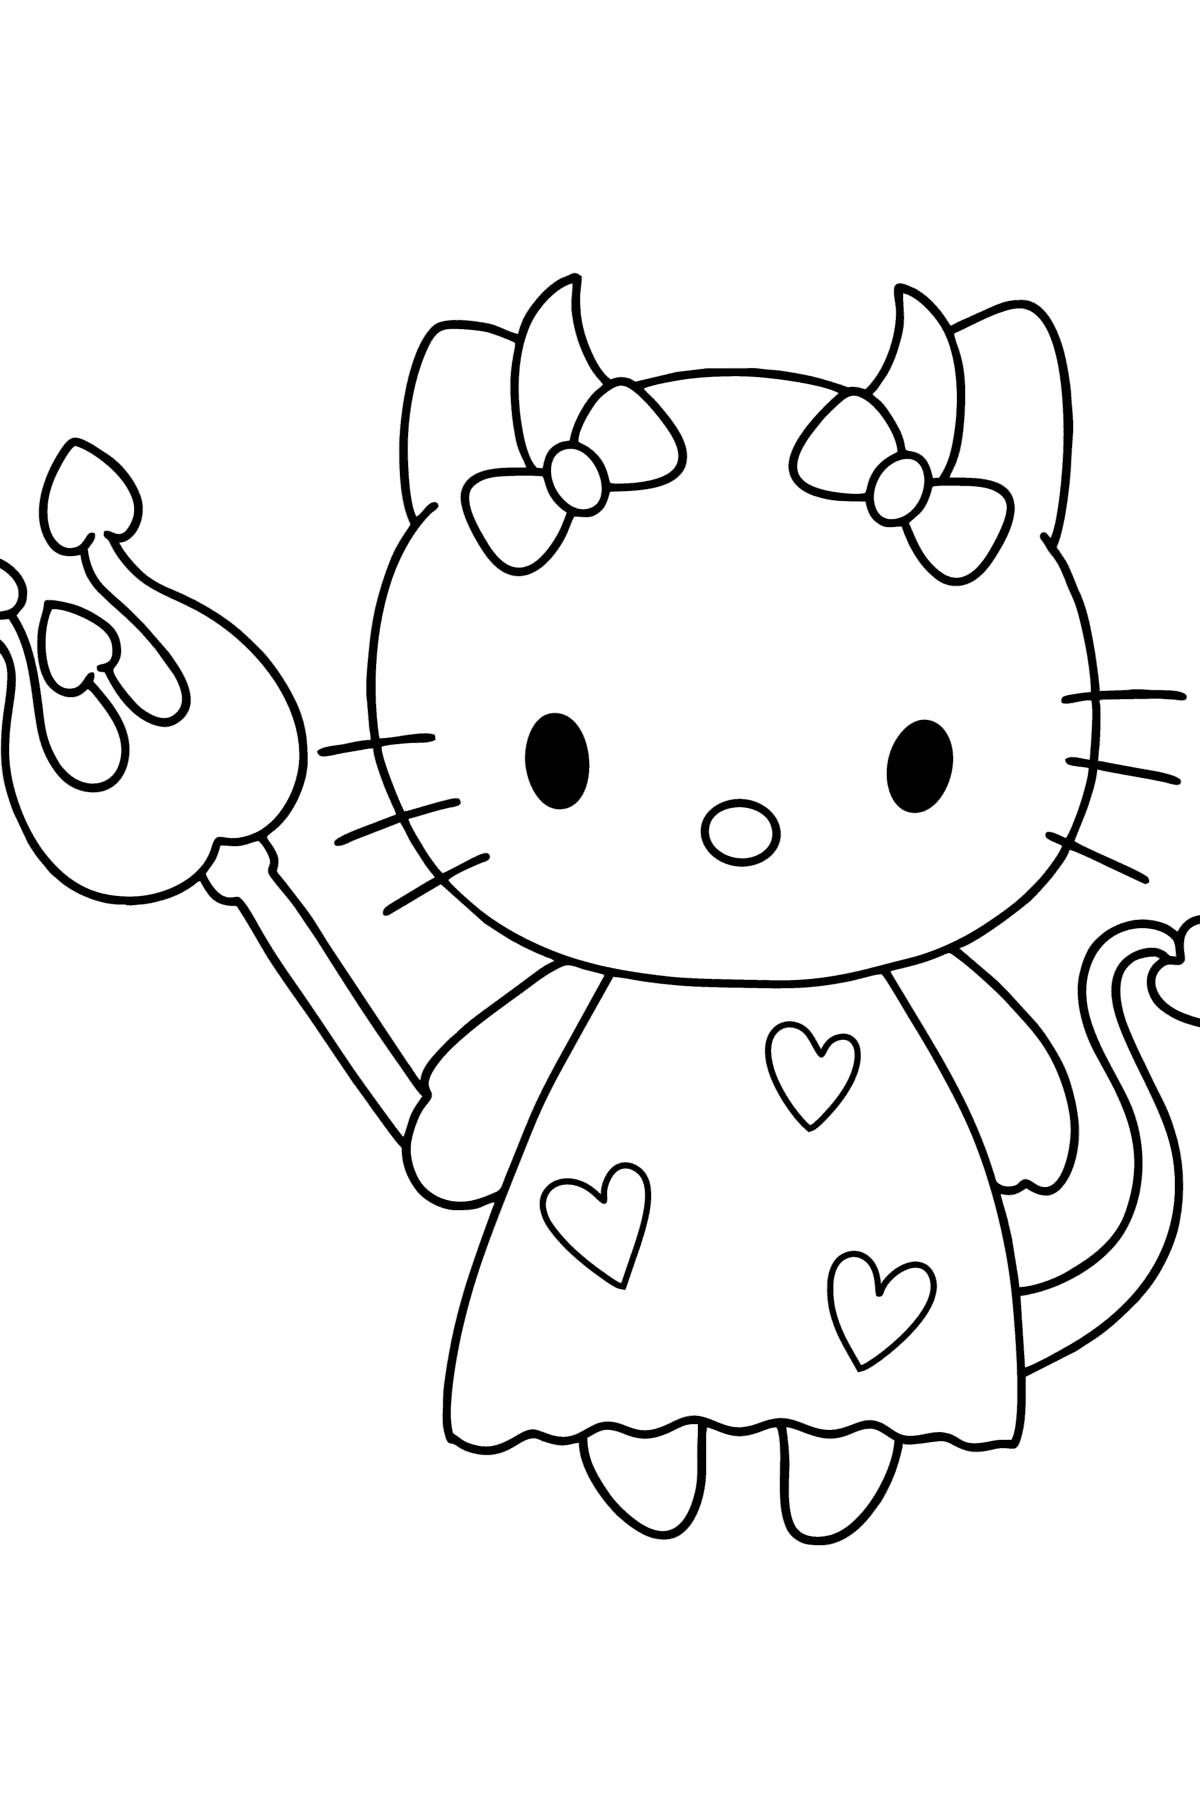 Boyama sayfası Hello Kitty şeytan - Boyamalar çocuklar için